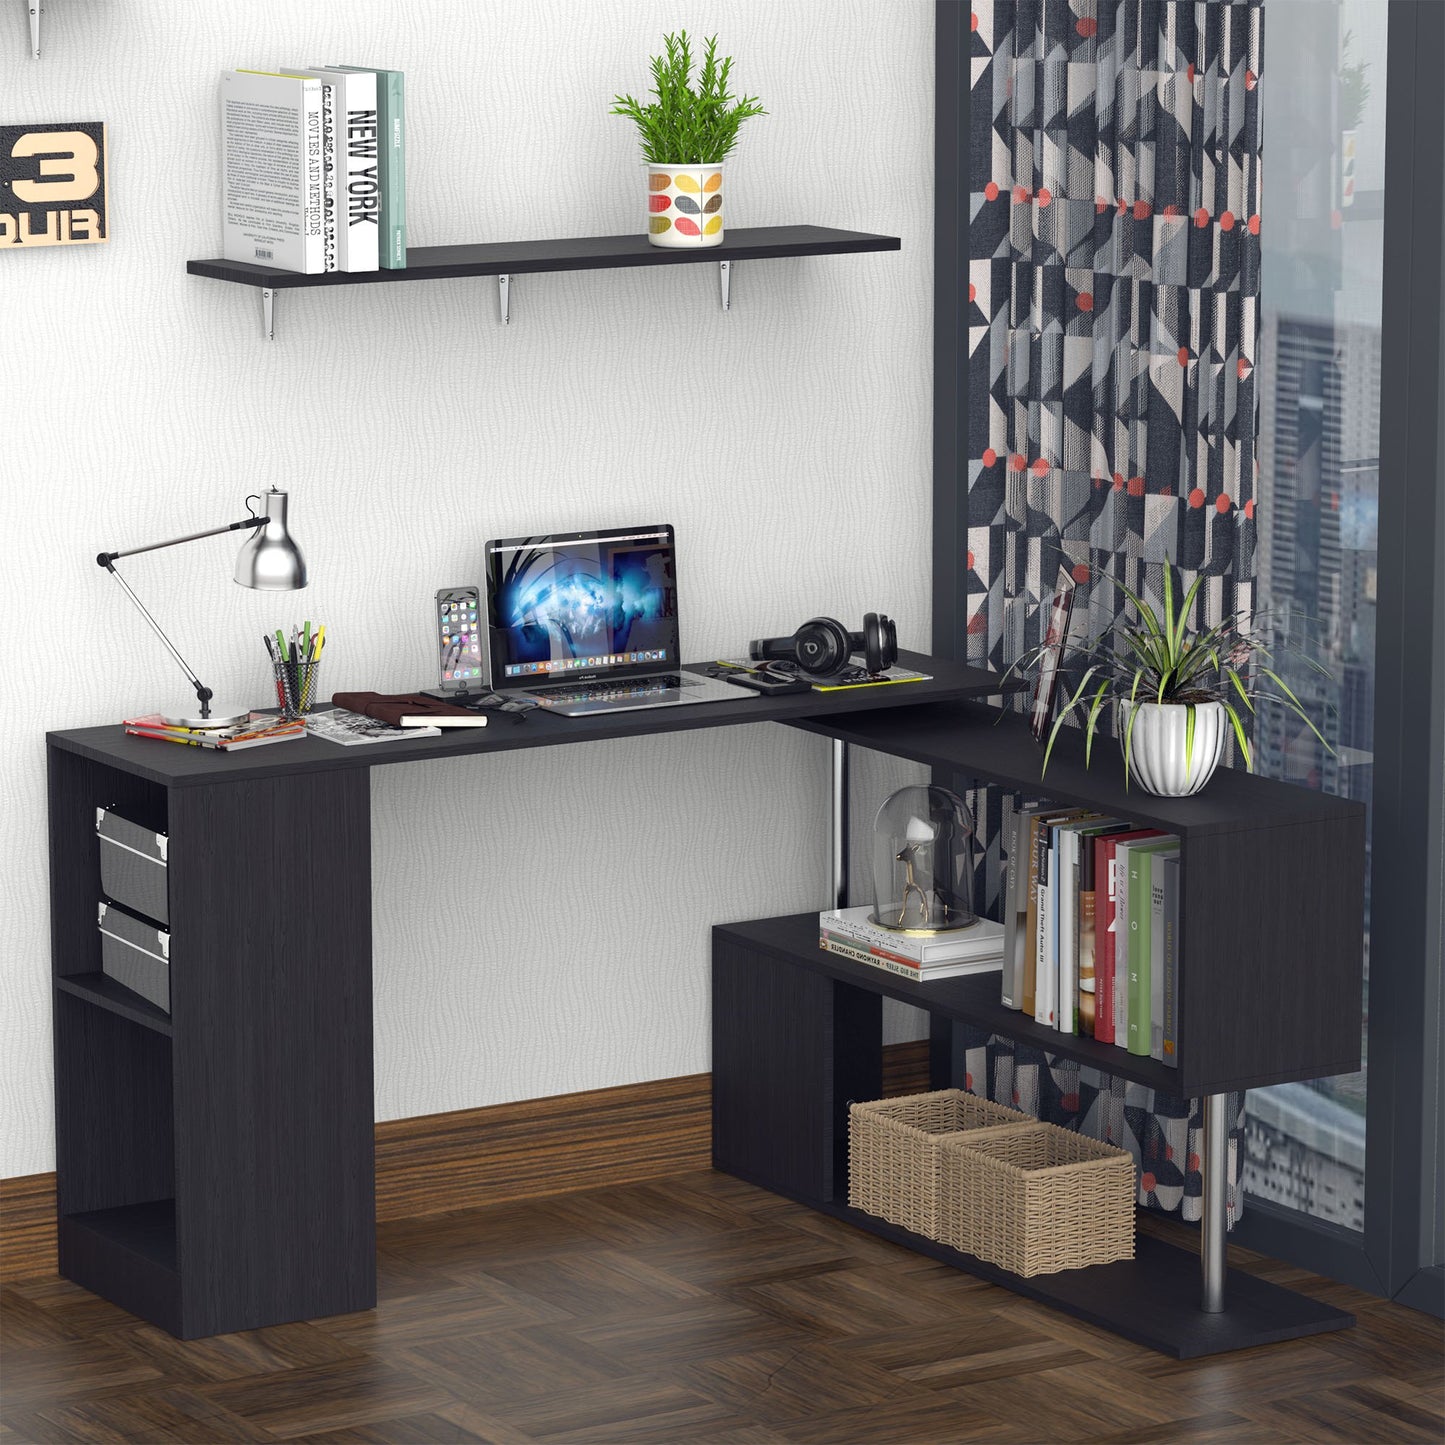 HOMCOM L-Shaped Computer Desk, 360° Rotating Corner Desk with Storage Shelves, 140 x 120cm Study Workstation for Home Office, Black